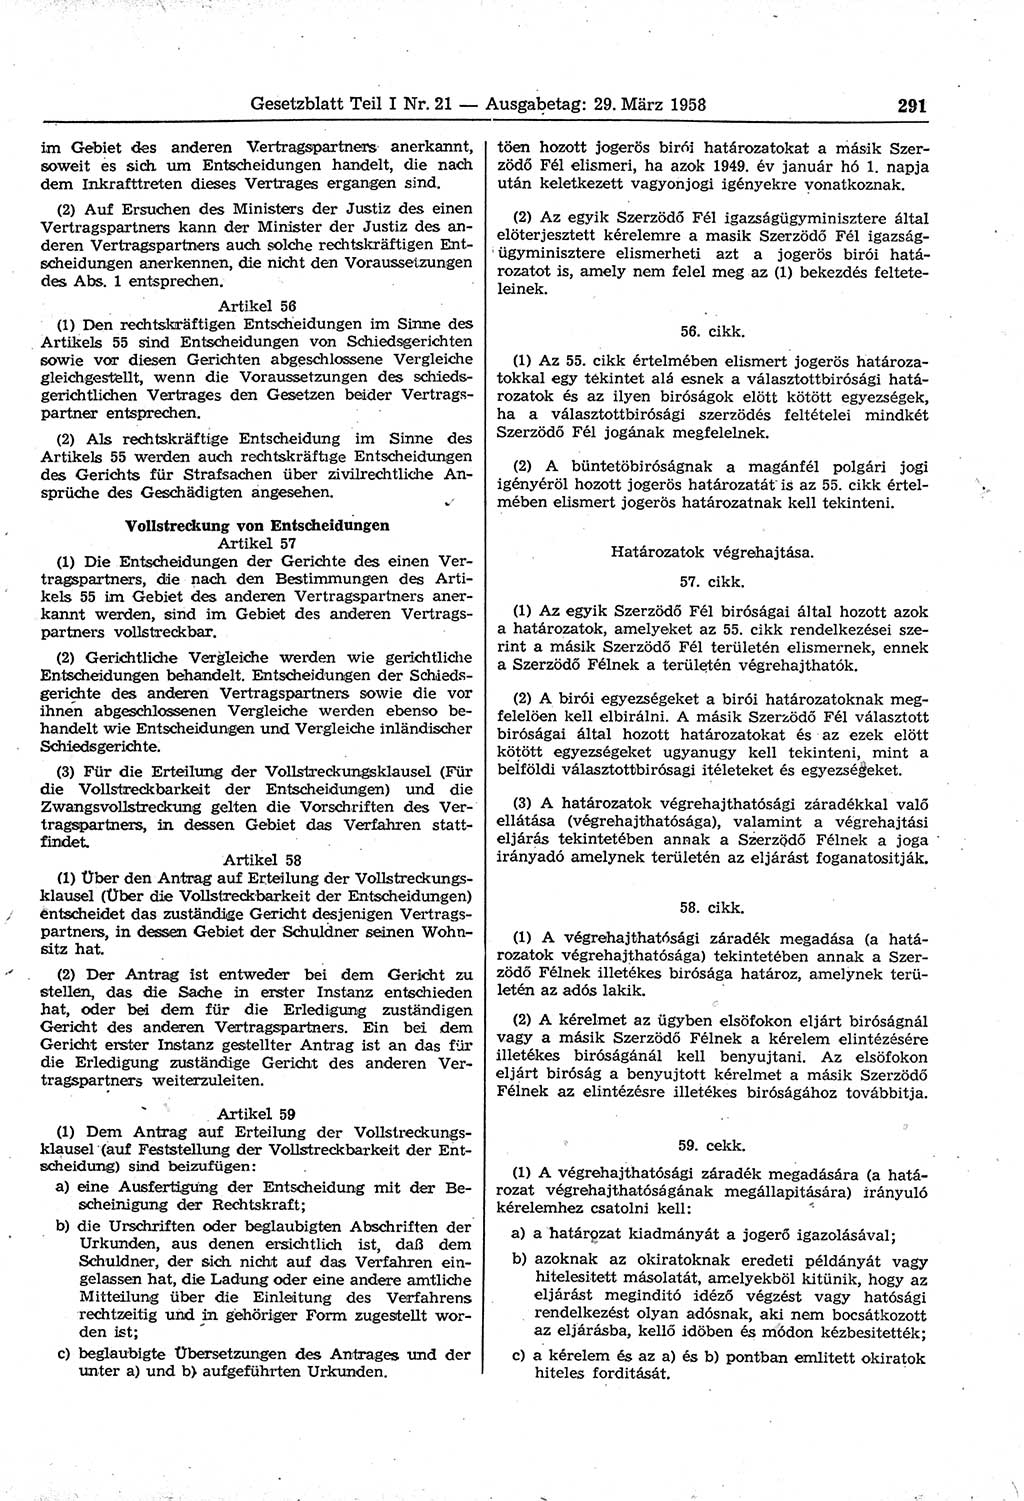 Gesetzblatt (GBl.) der Deutschen Demokratischen Republik (DDR) Teil Ⅰ 1958, Seite 291 (GBl. DDR Ⅰ 1958, S. 291)